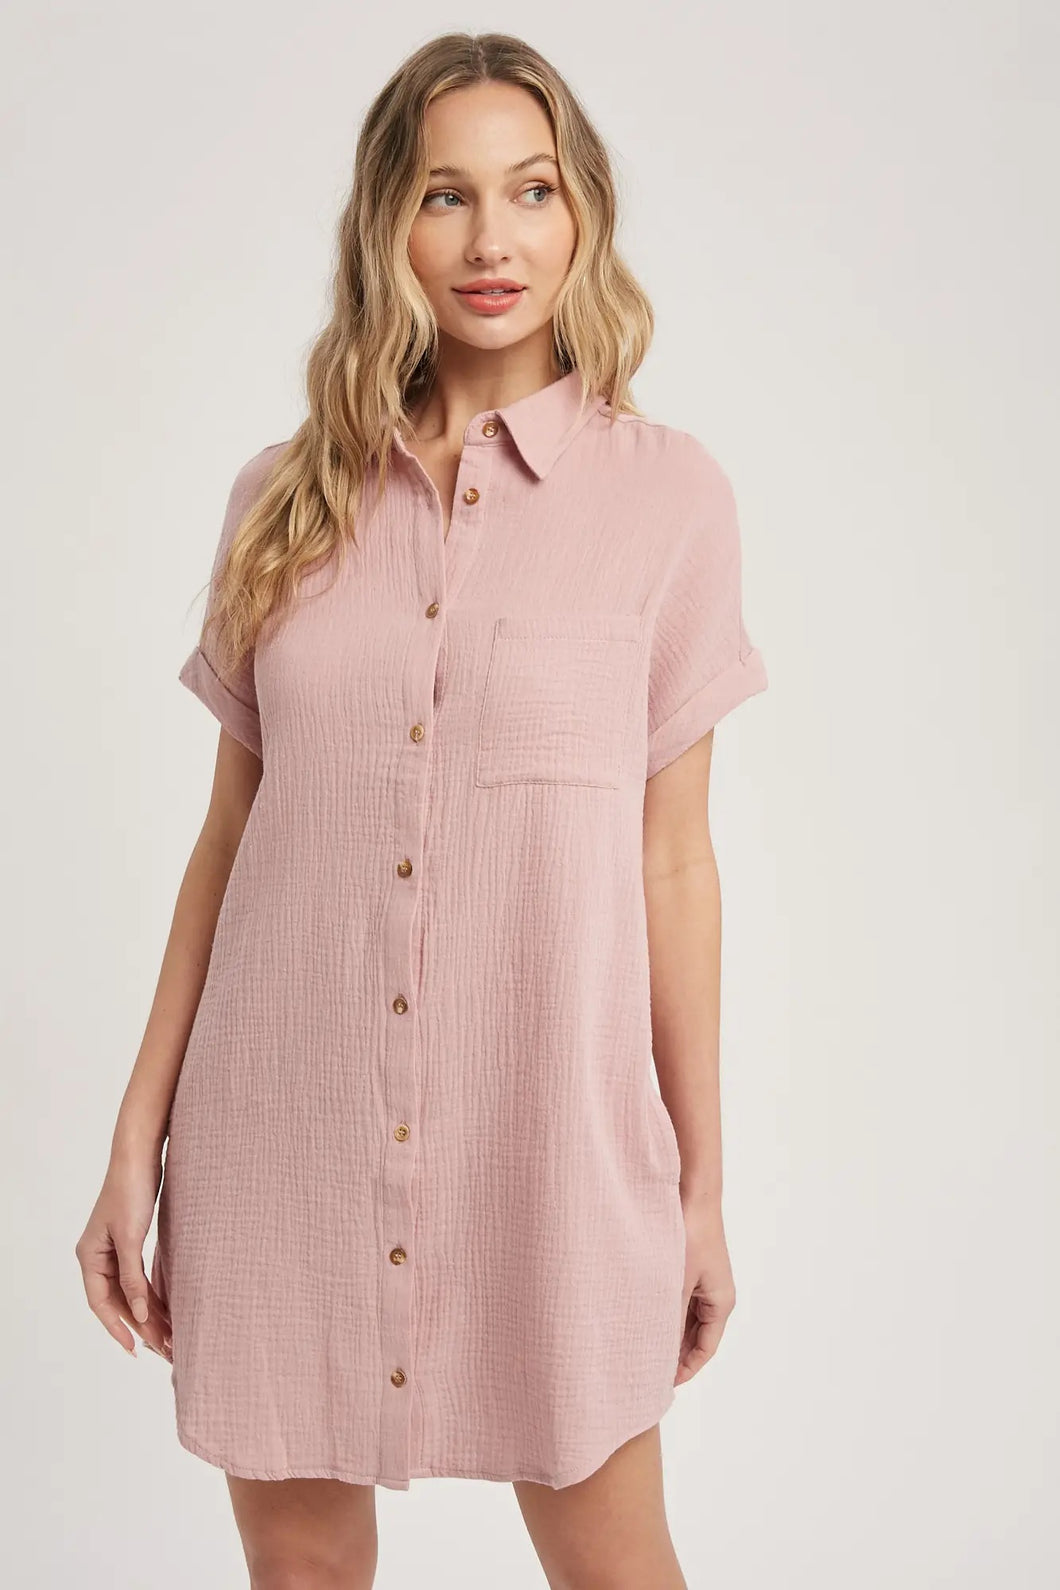 Dusty Pink Button Up Shirt Dress